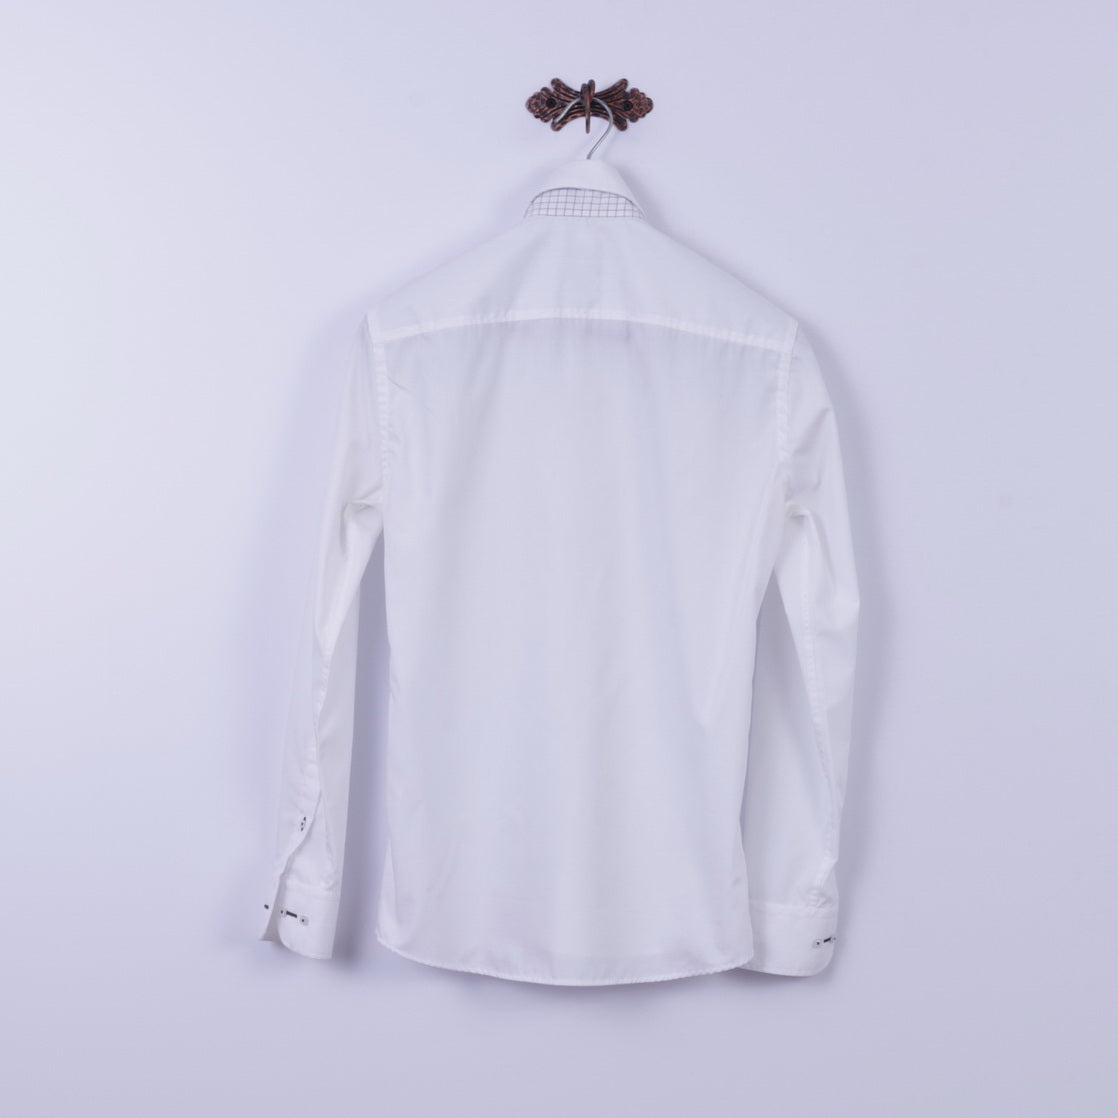 Ricco Vero Mens S Casual Shirt White Cotton Traveller Button Down Collar Long Sleeve